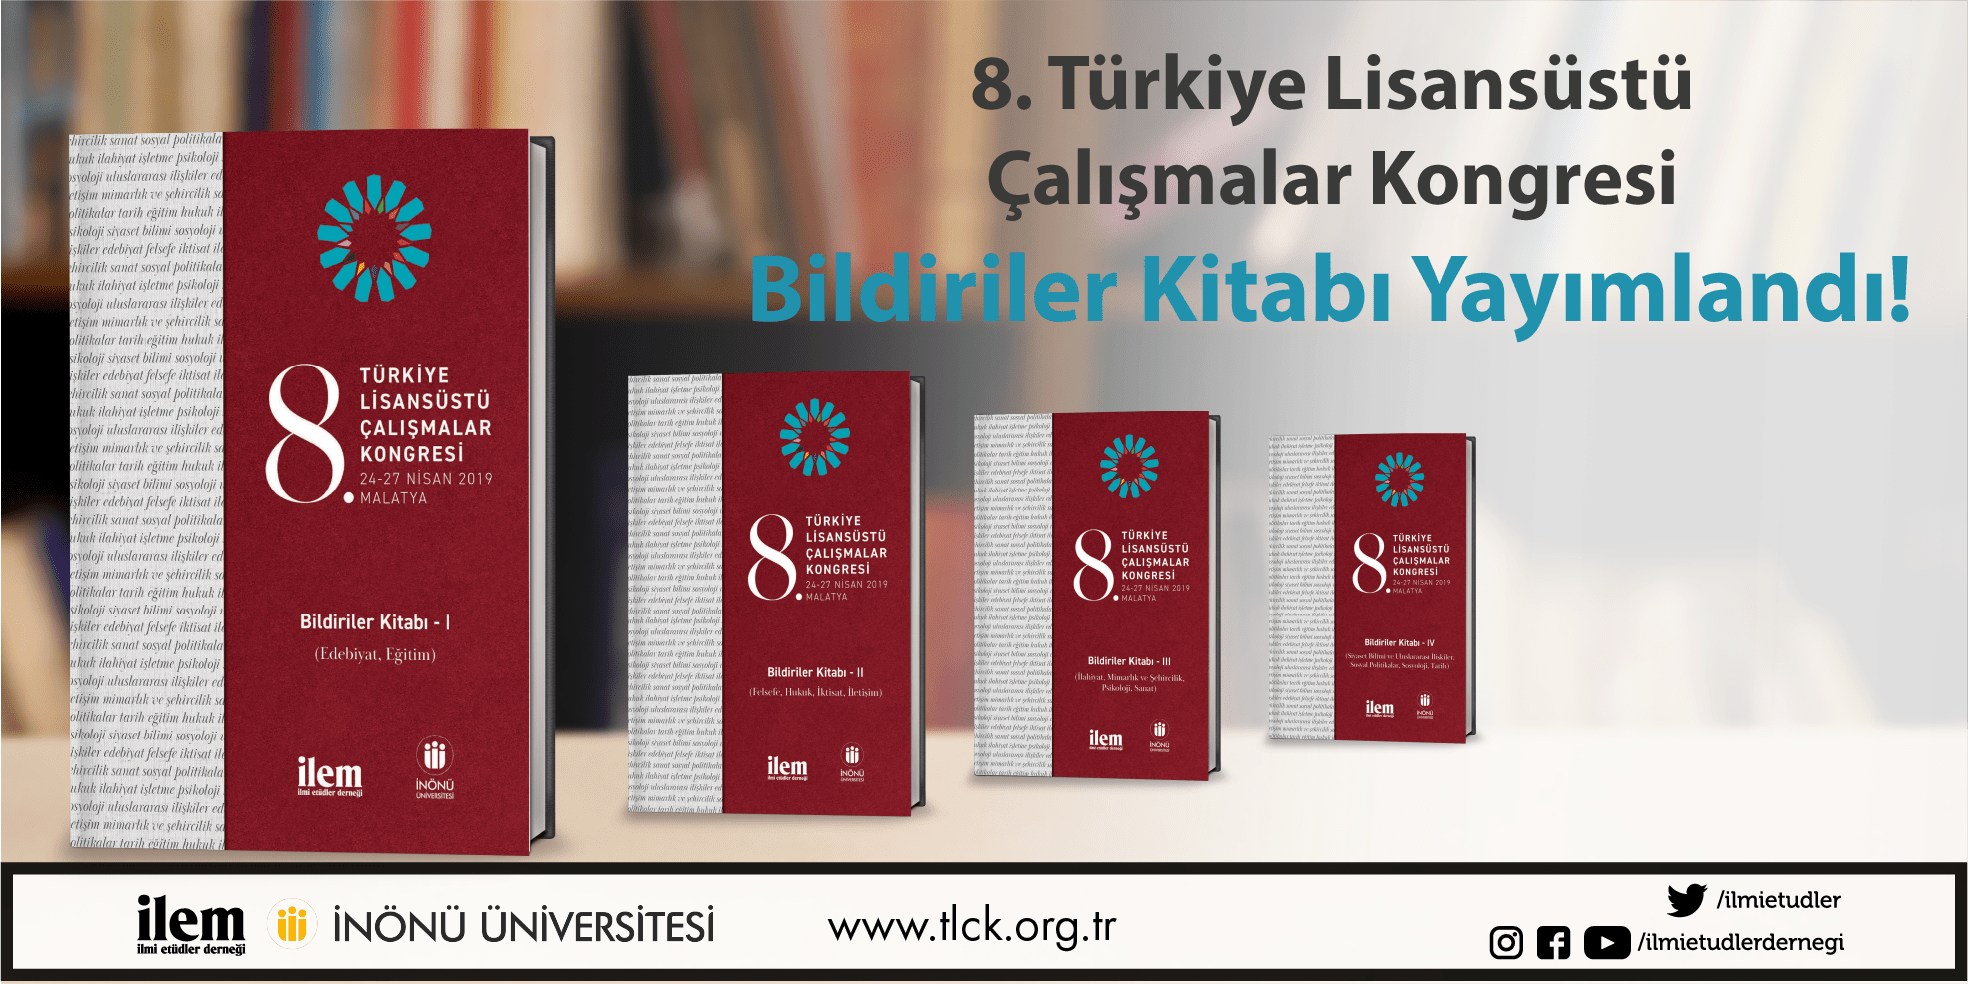 8. Türkiye Lisansüstü Çalışmalar Kongresi (TLÇK) Bildiriler Kitabı Yayımlandı!